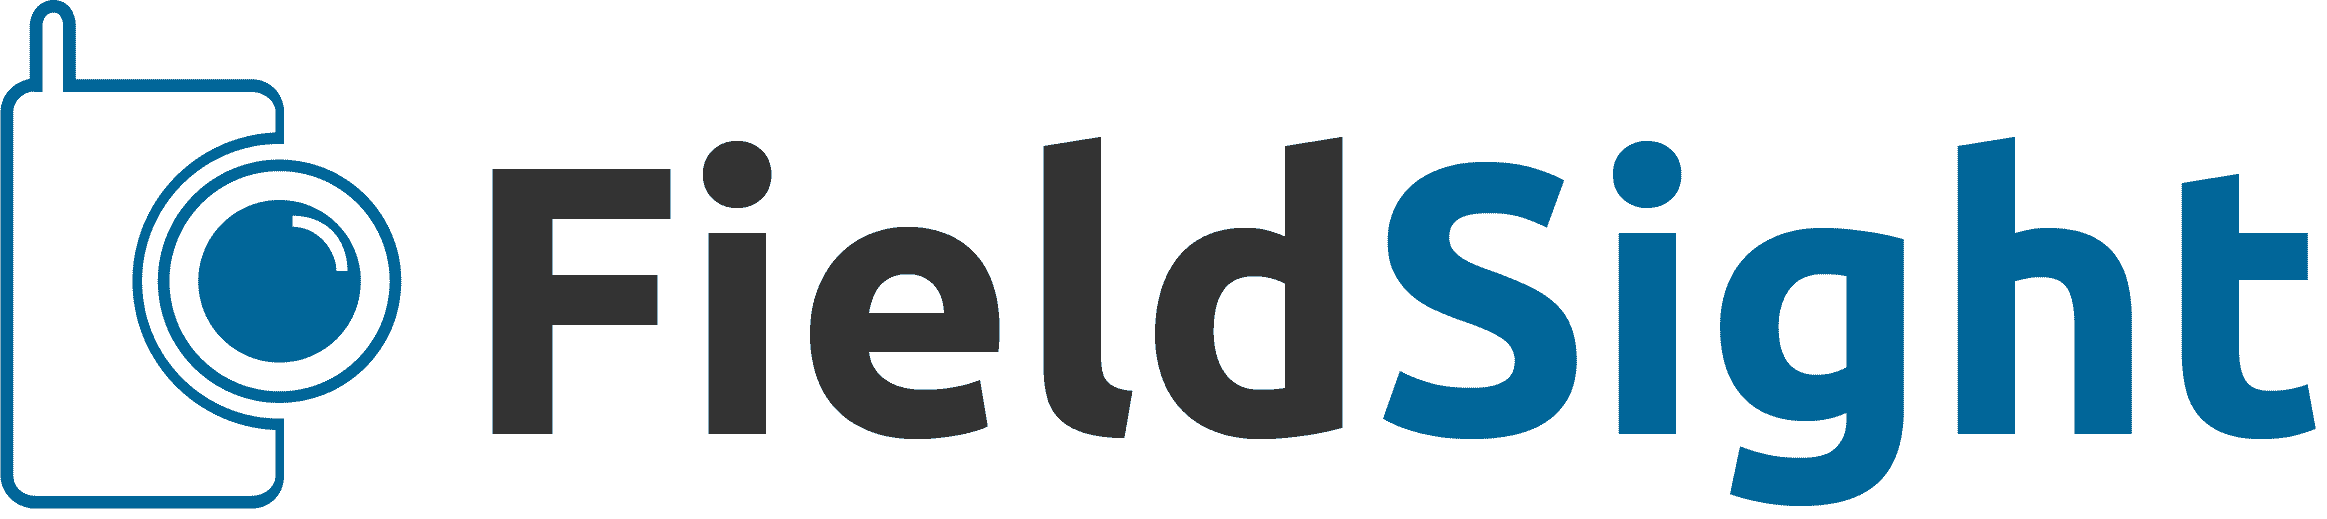 Field Sight logo